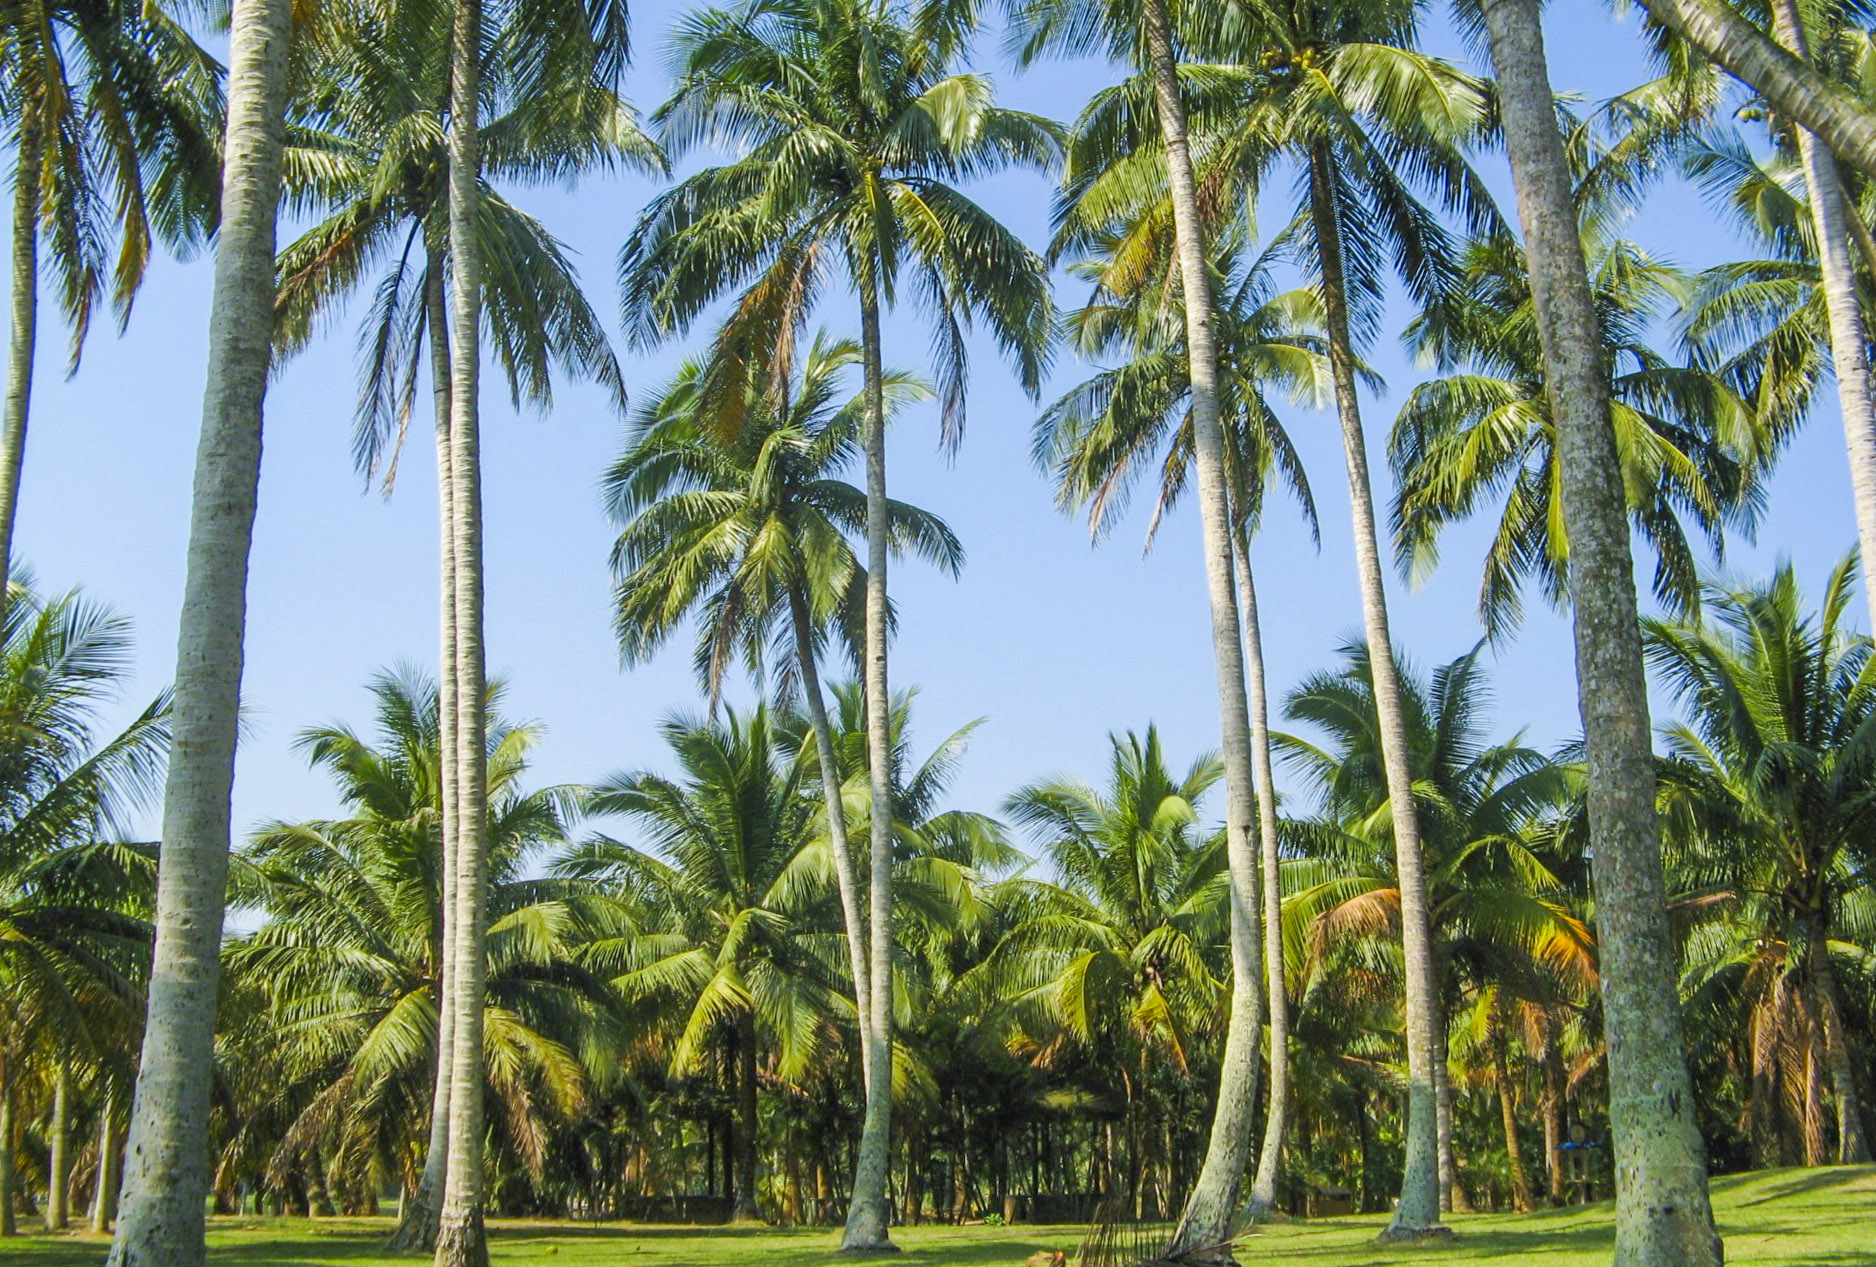 比三亚海口更美的海南城市碧波仙境椰林遍地重点的是人少